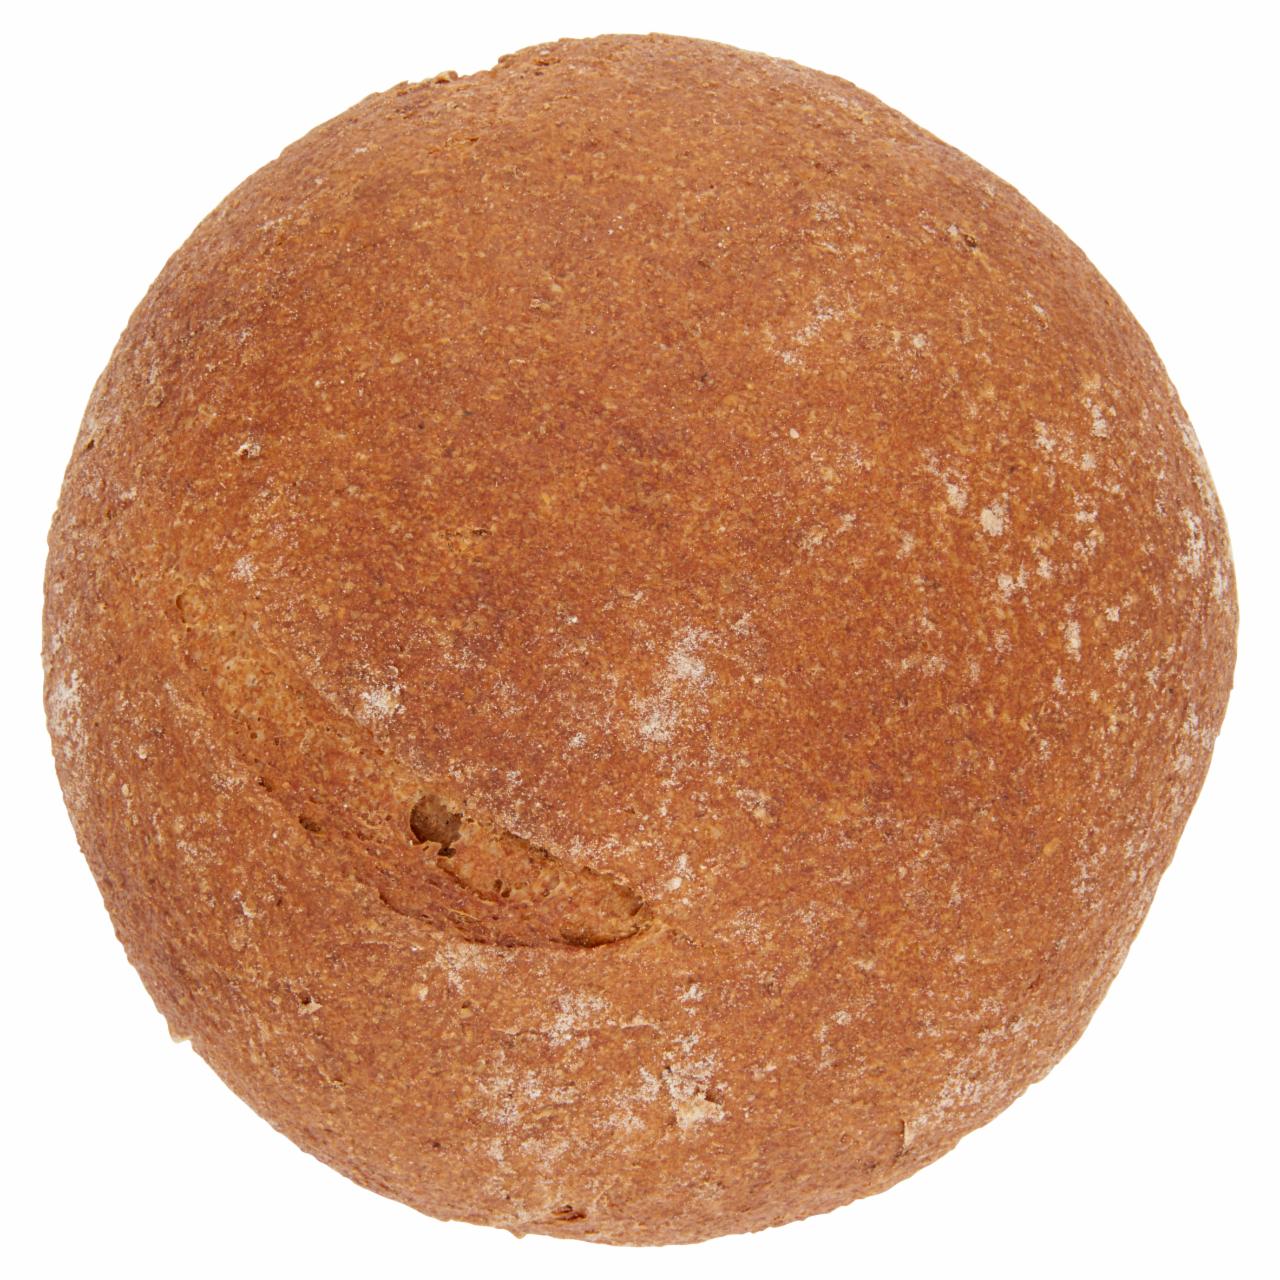 Képek - Jókenyér teljeskiőrlésű tönkölybúza kenyér 0,5 kg